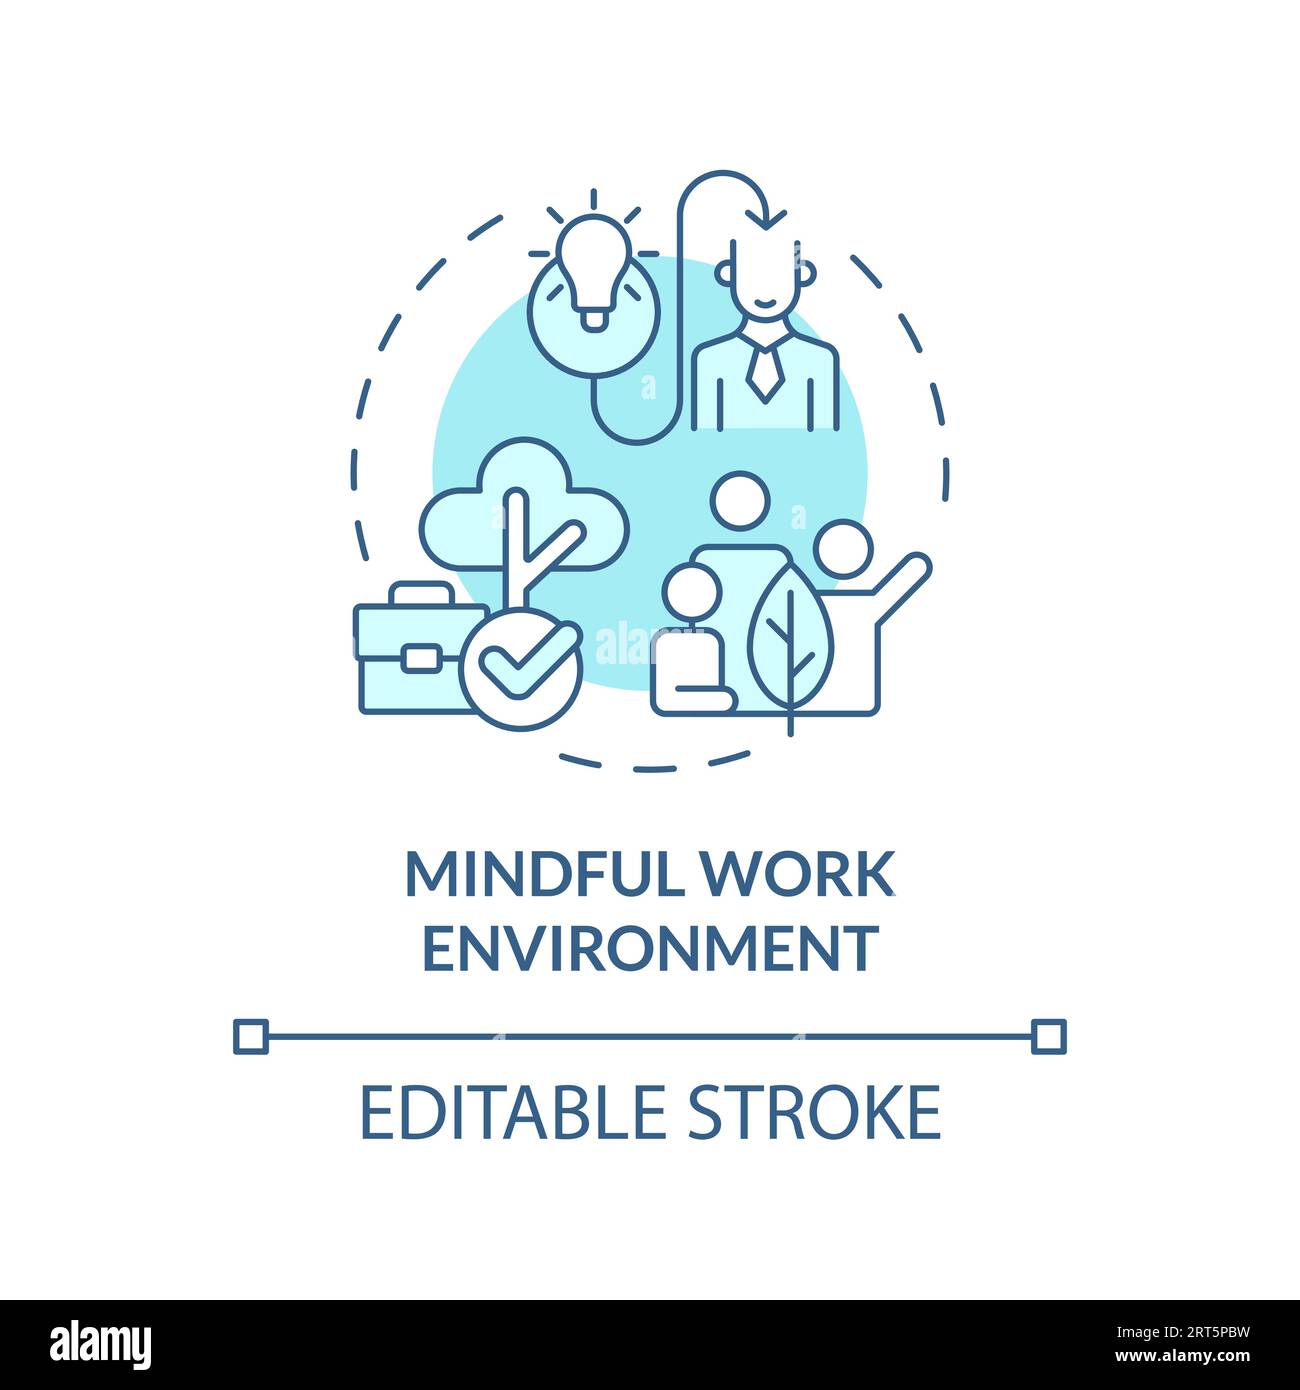 Mindful Leadership Stock Illustrations – 297 Mindful Leadership